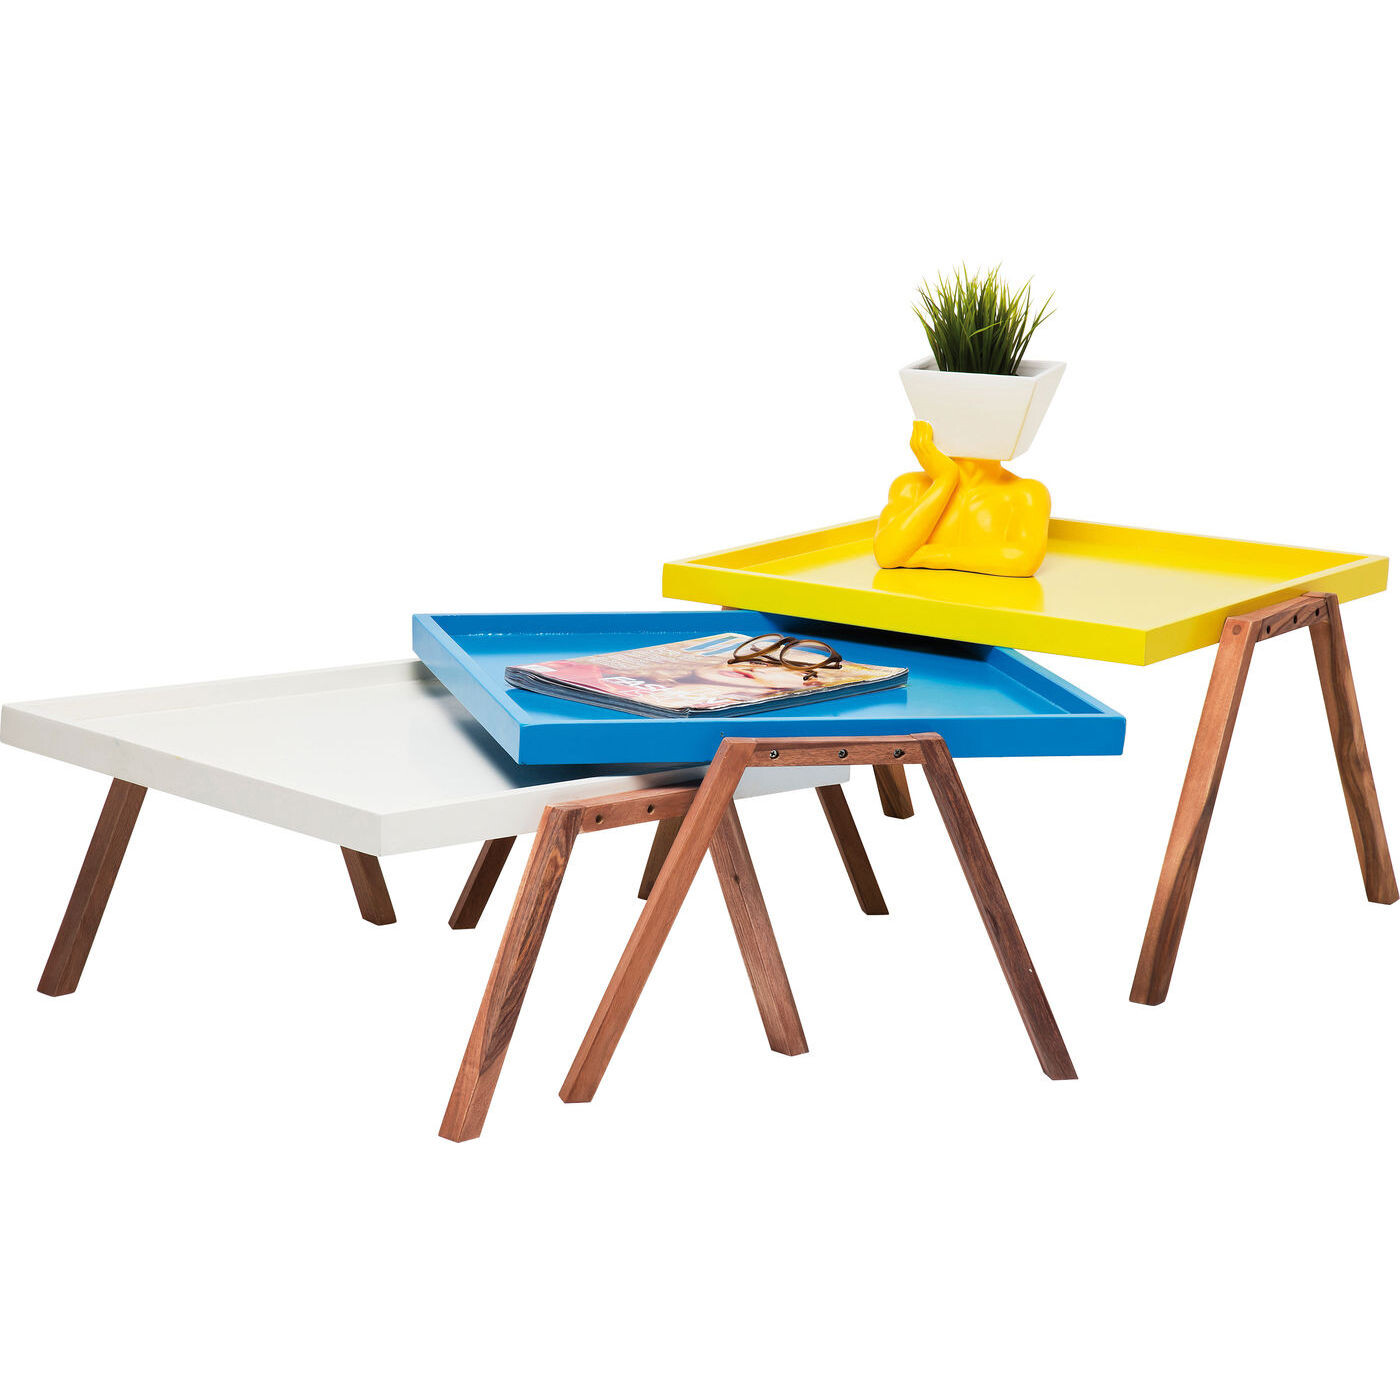 Журнальный столик дизайнерский цветной с деревыянными ножками Tray, 3 штуки 78383